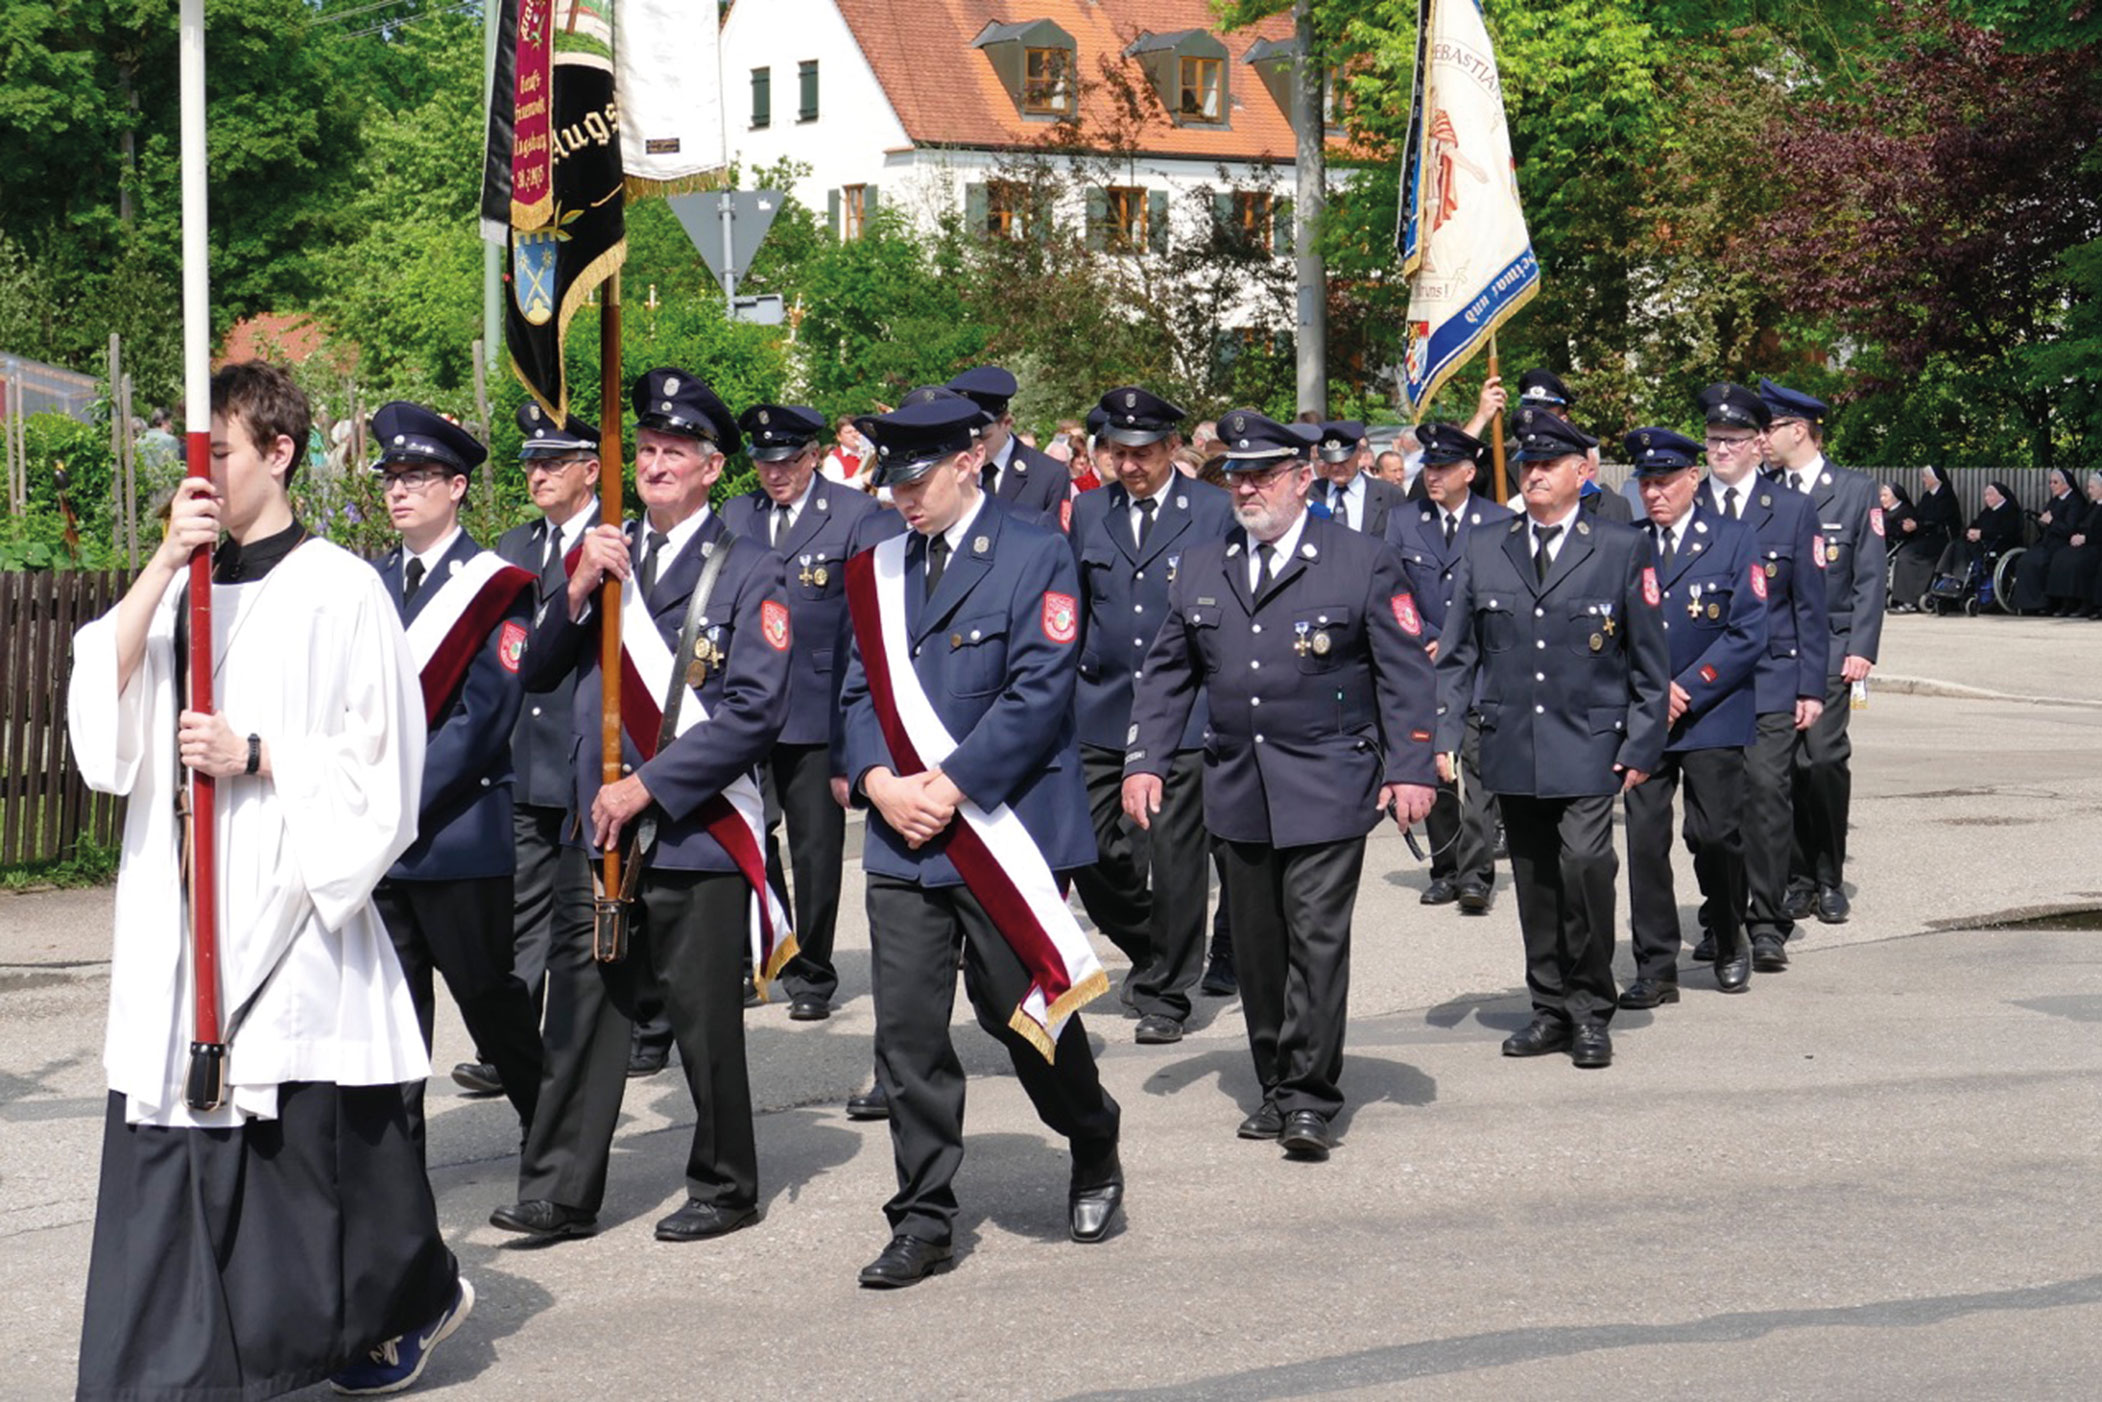 Fwd_-Bilder-von-der-Fronleichnams-Prozession-in-Bergheim-5